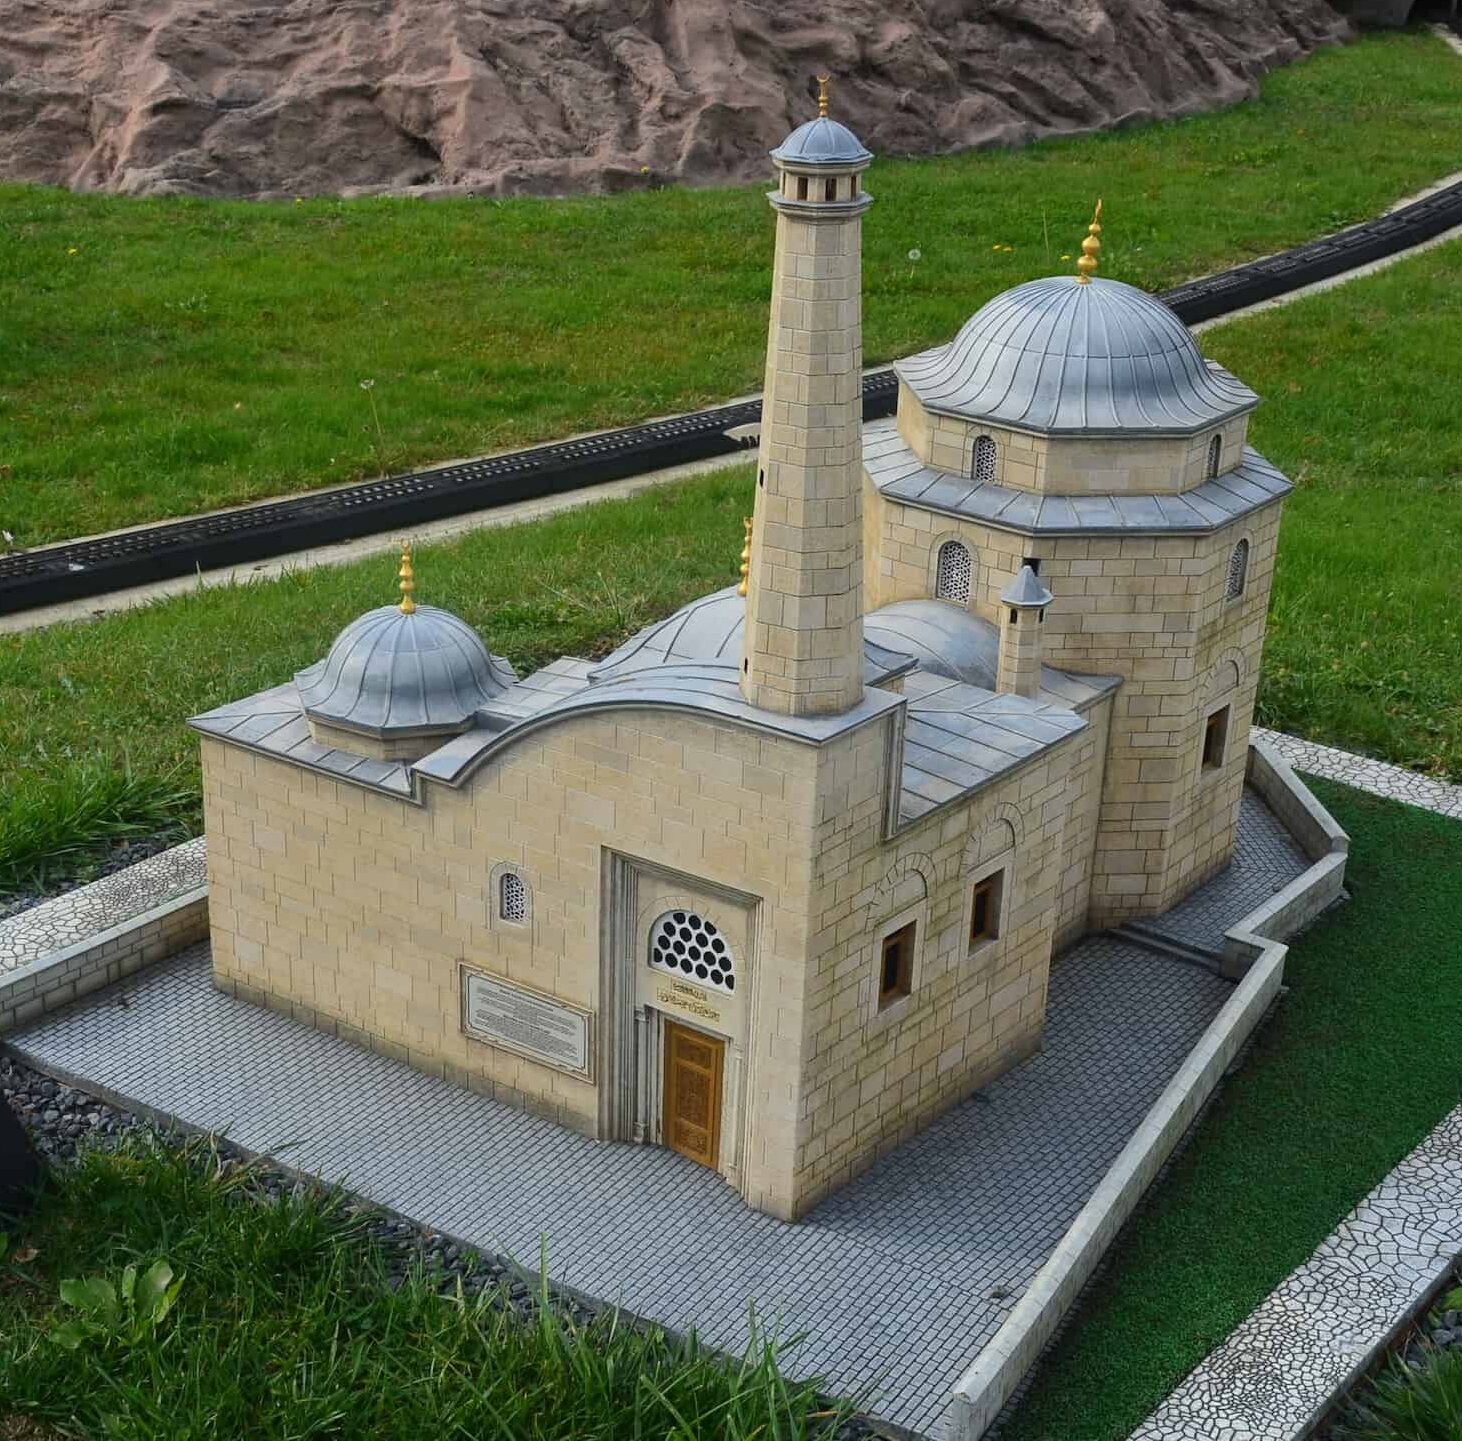 Model of the Tomb of Ismail Fakirullah and Ibrahim Hakkı (1730-1780), Tillo, 18th century at Miniatürk in Istanbul, Turkey